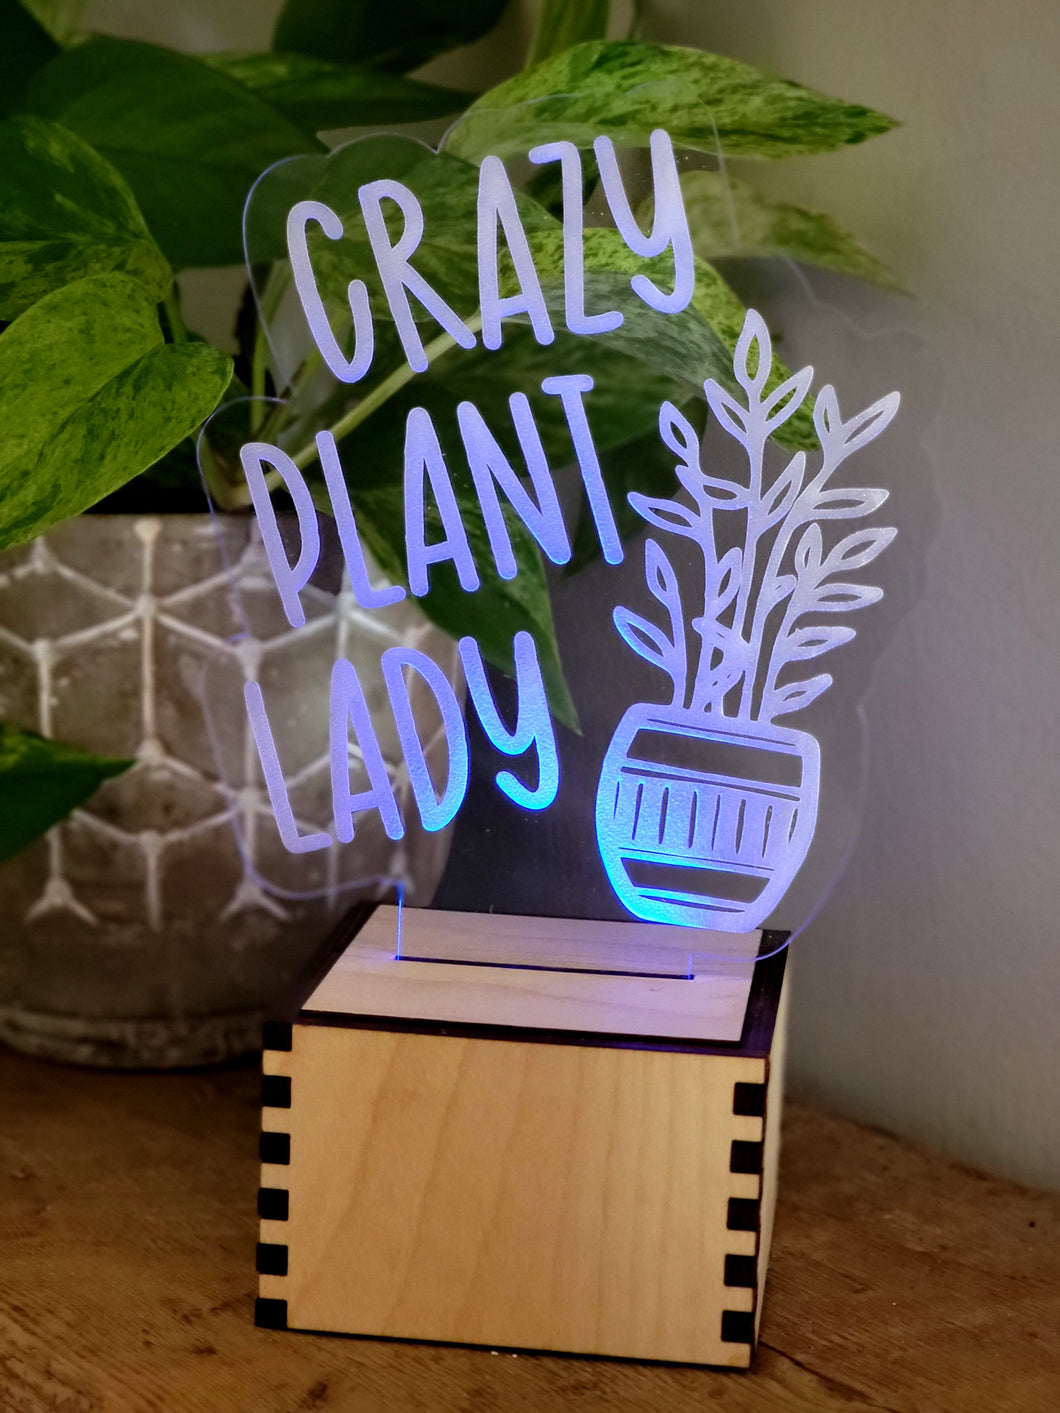 Lit Plant Lady Sign